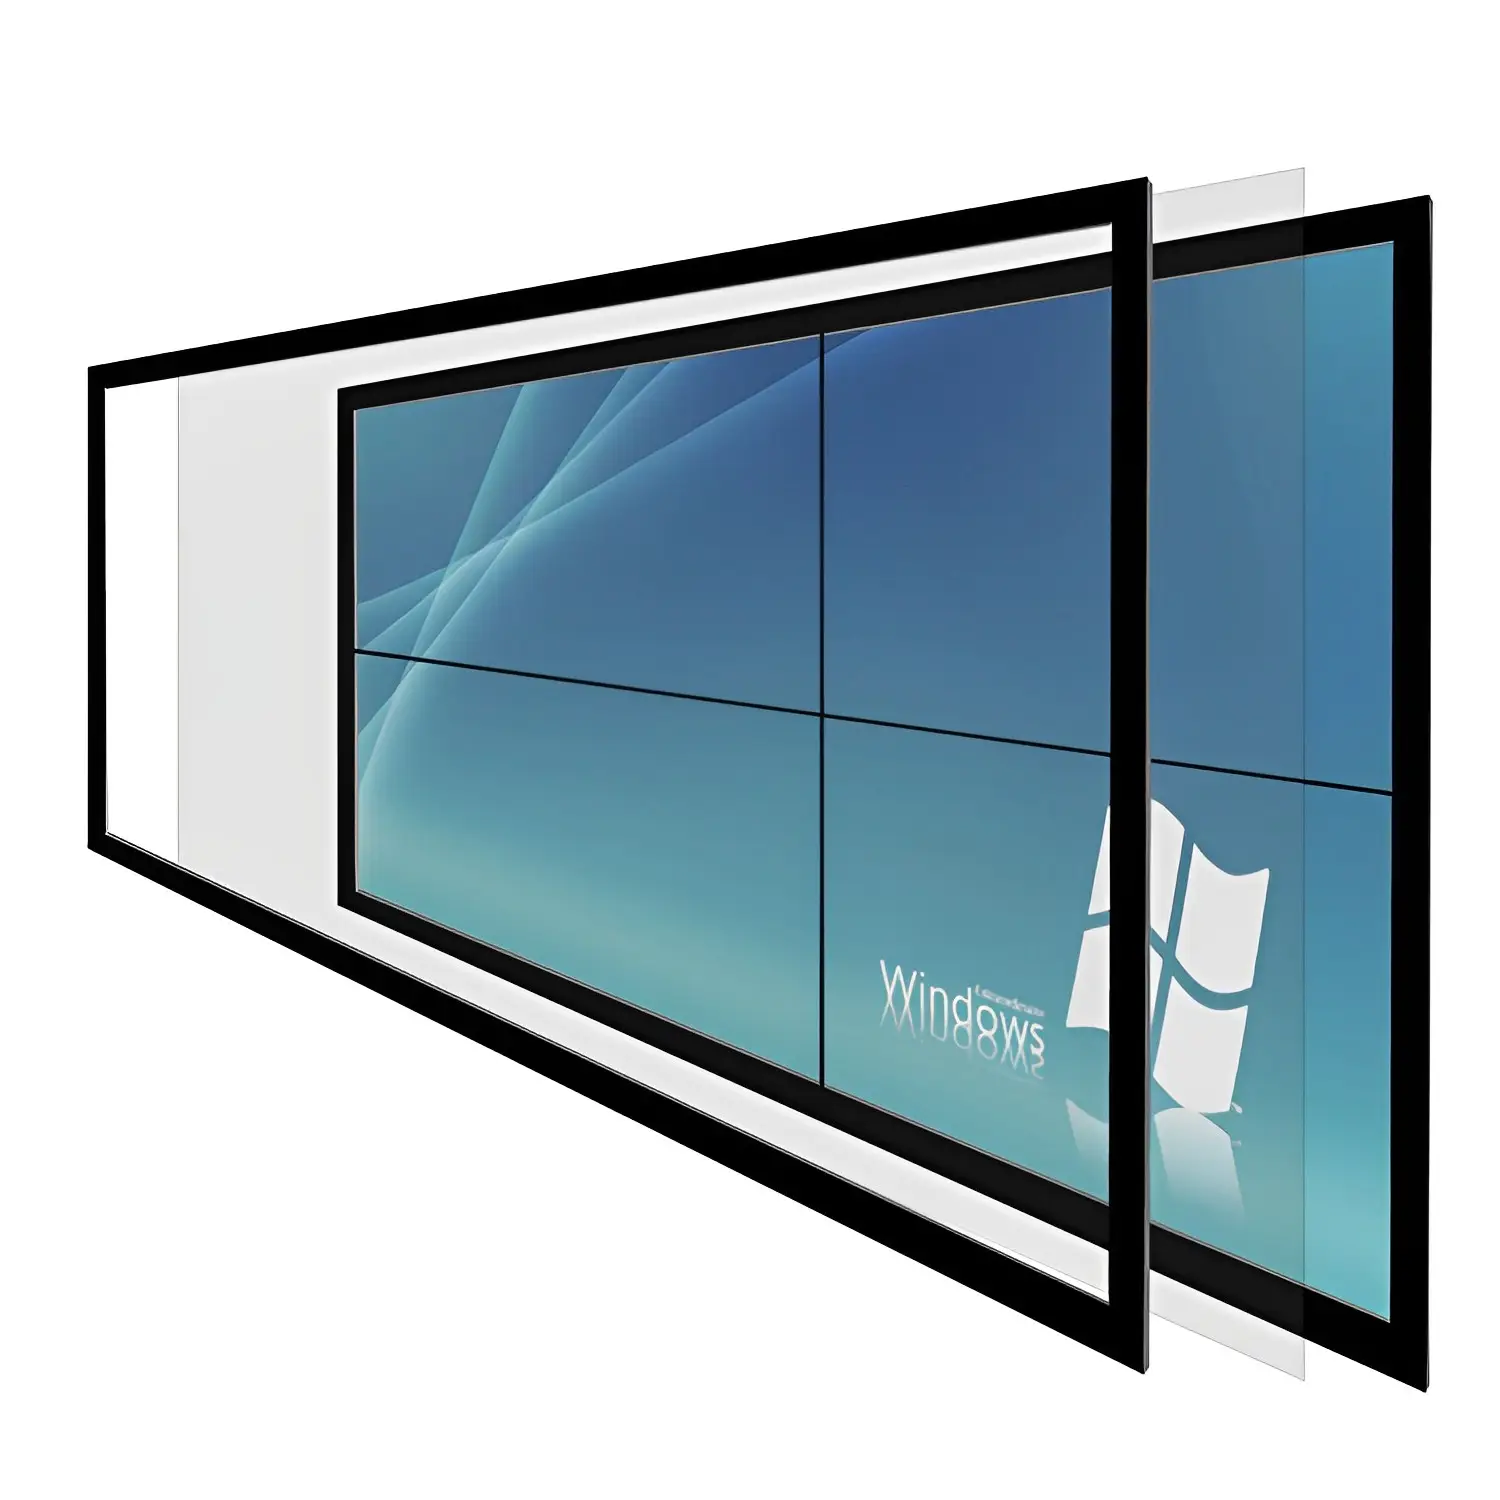 工場直販スマートIrタッチスクリーンフレームマルチ赤外線タッチパネルとガラスタッチスクリーンオーバーレイ